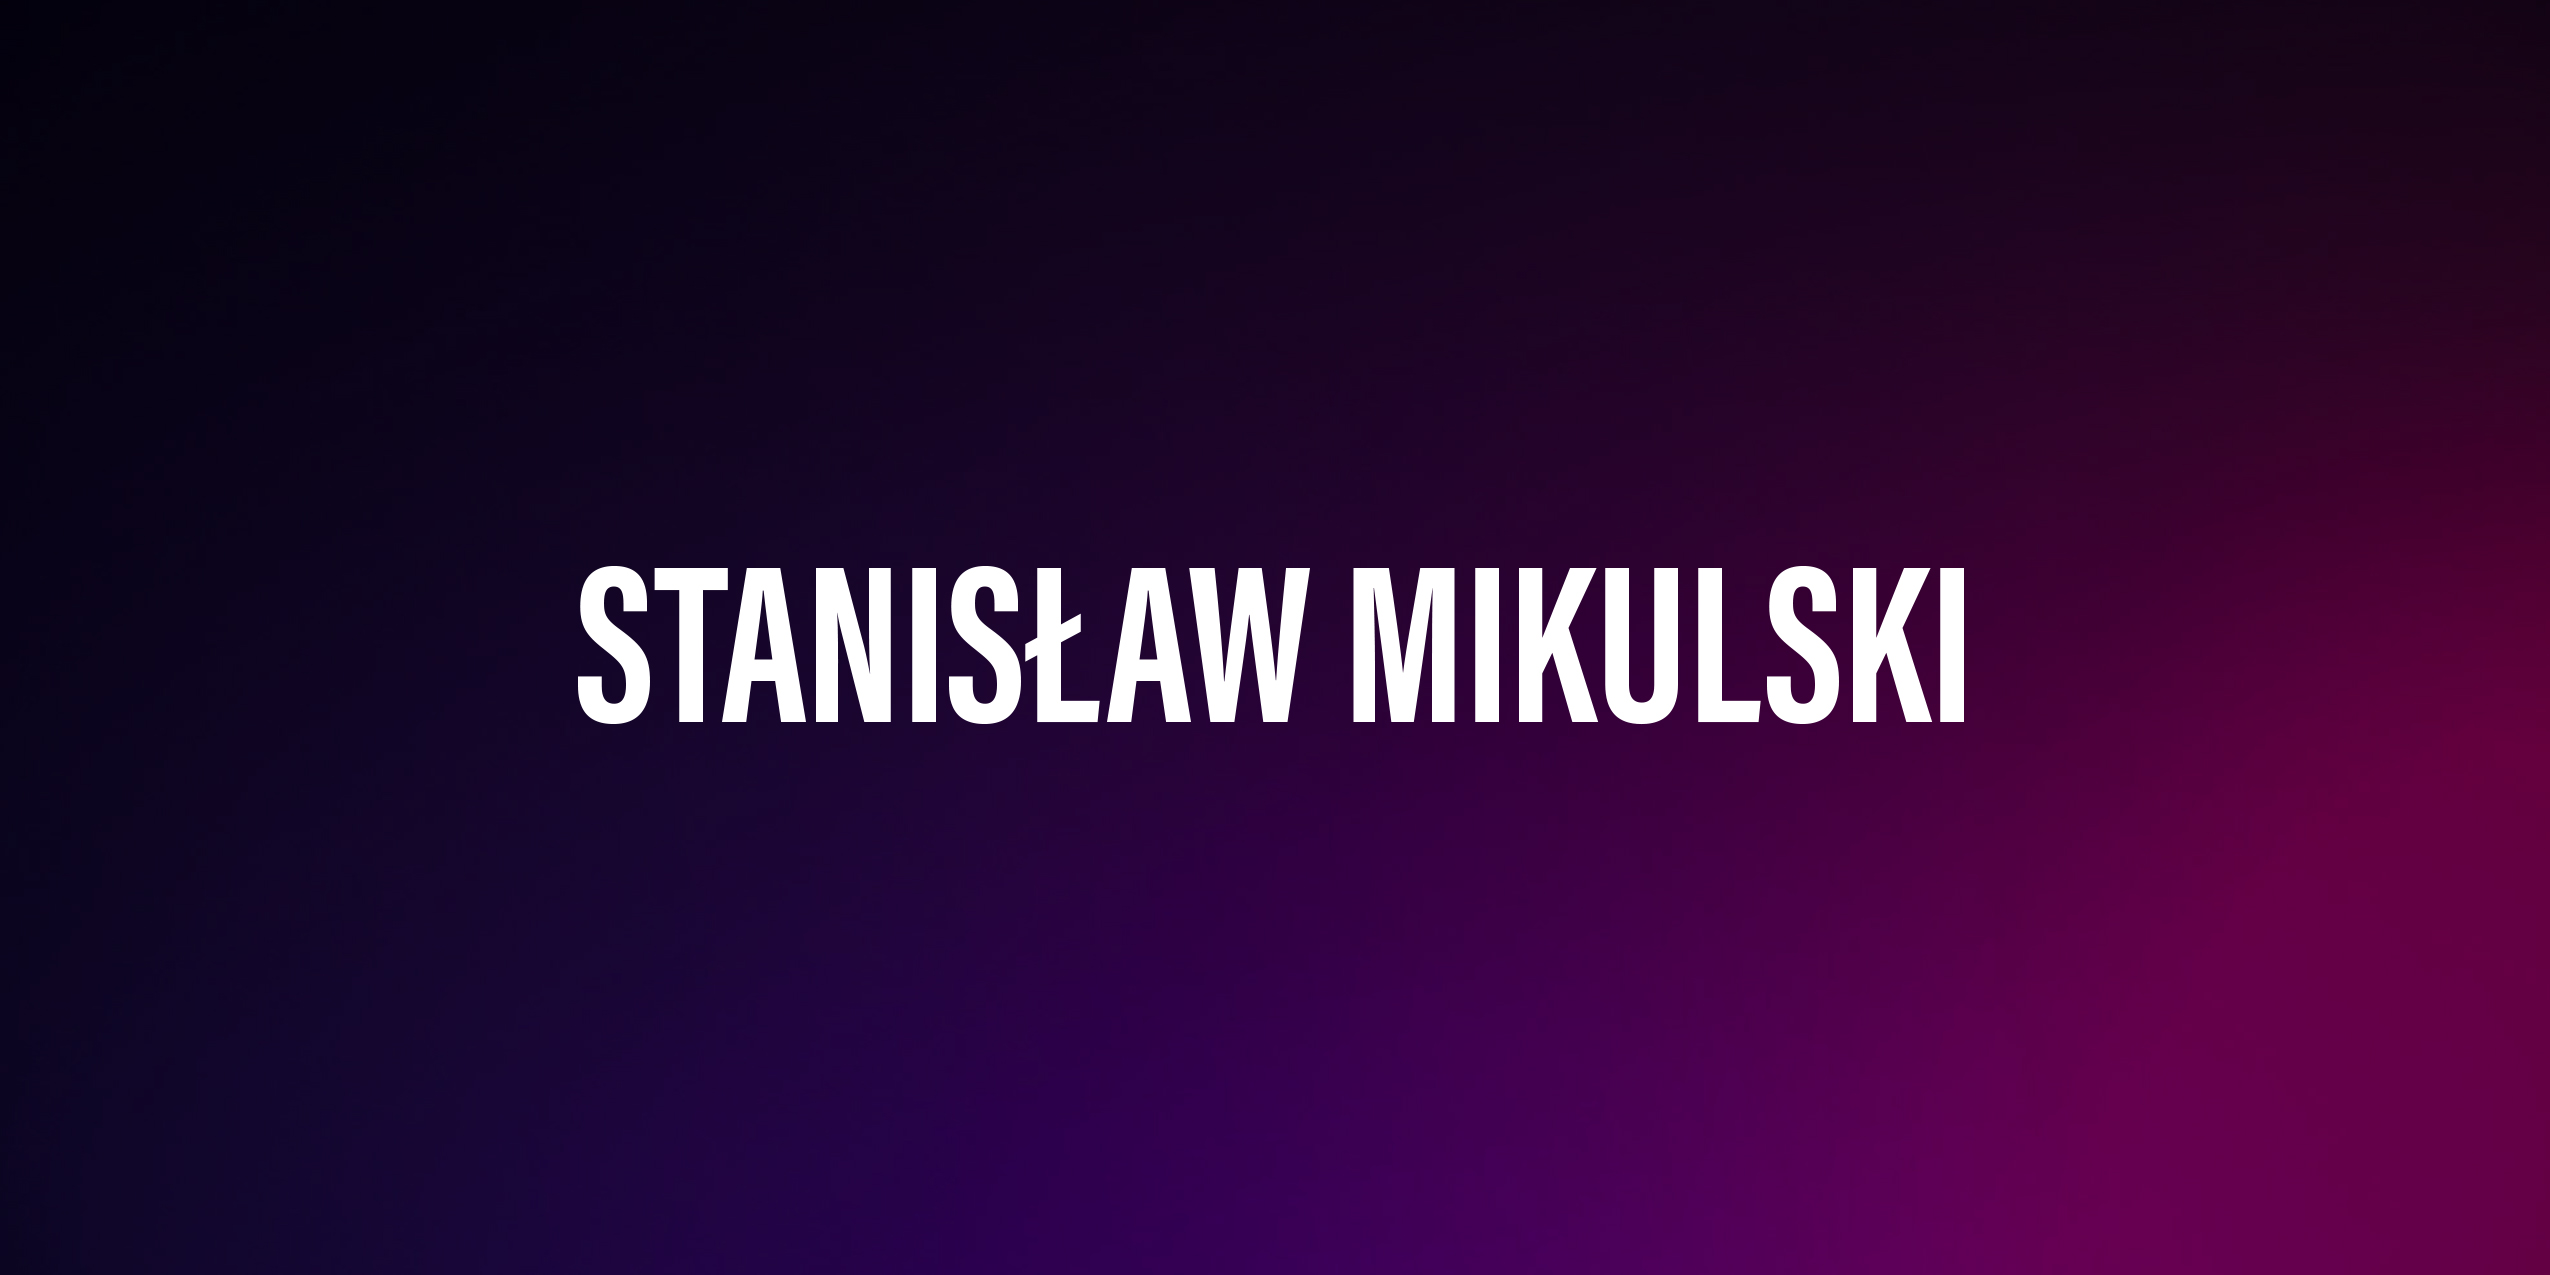 Stanisław Mikulski – życiorys i filmografia